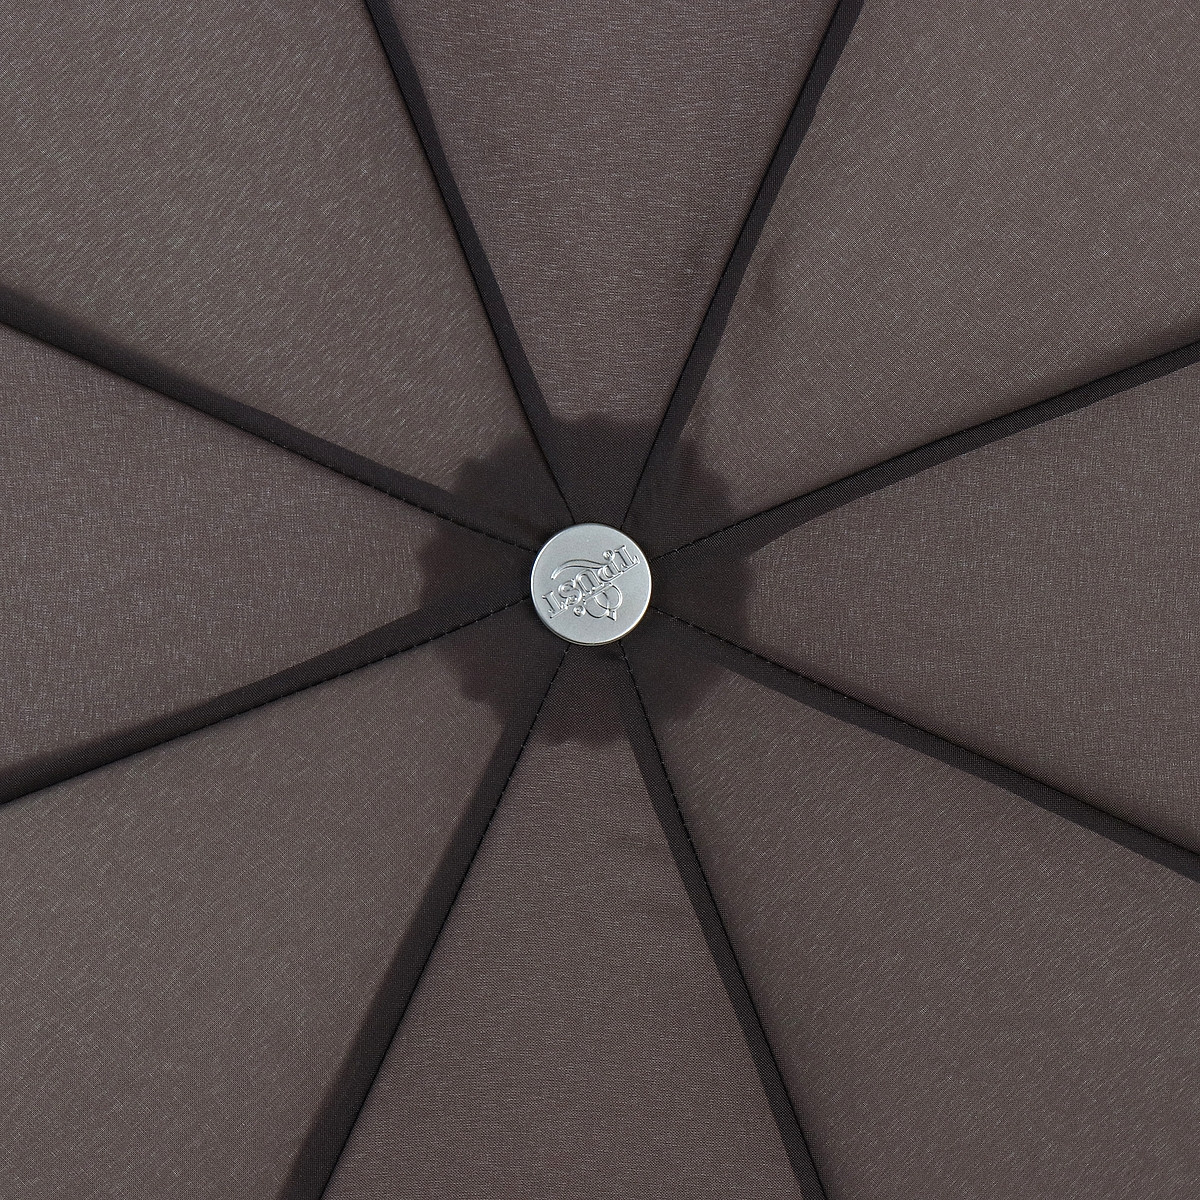 Женский складной зонтик полный автомат Trust 102 см розовый - фото 3